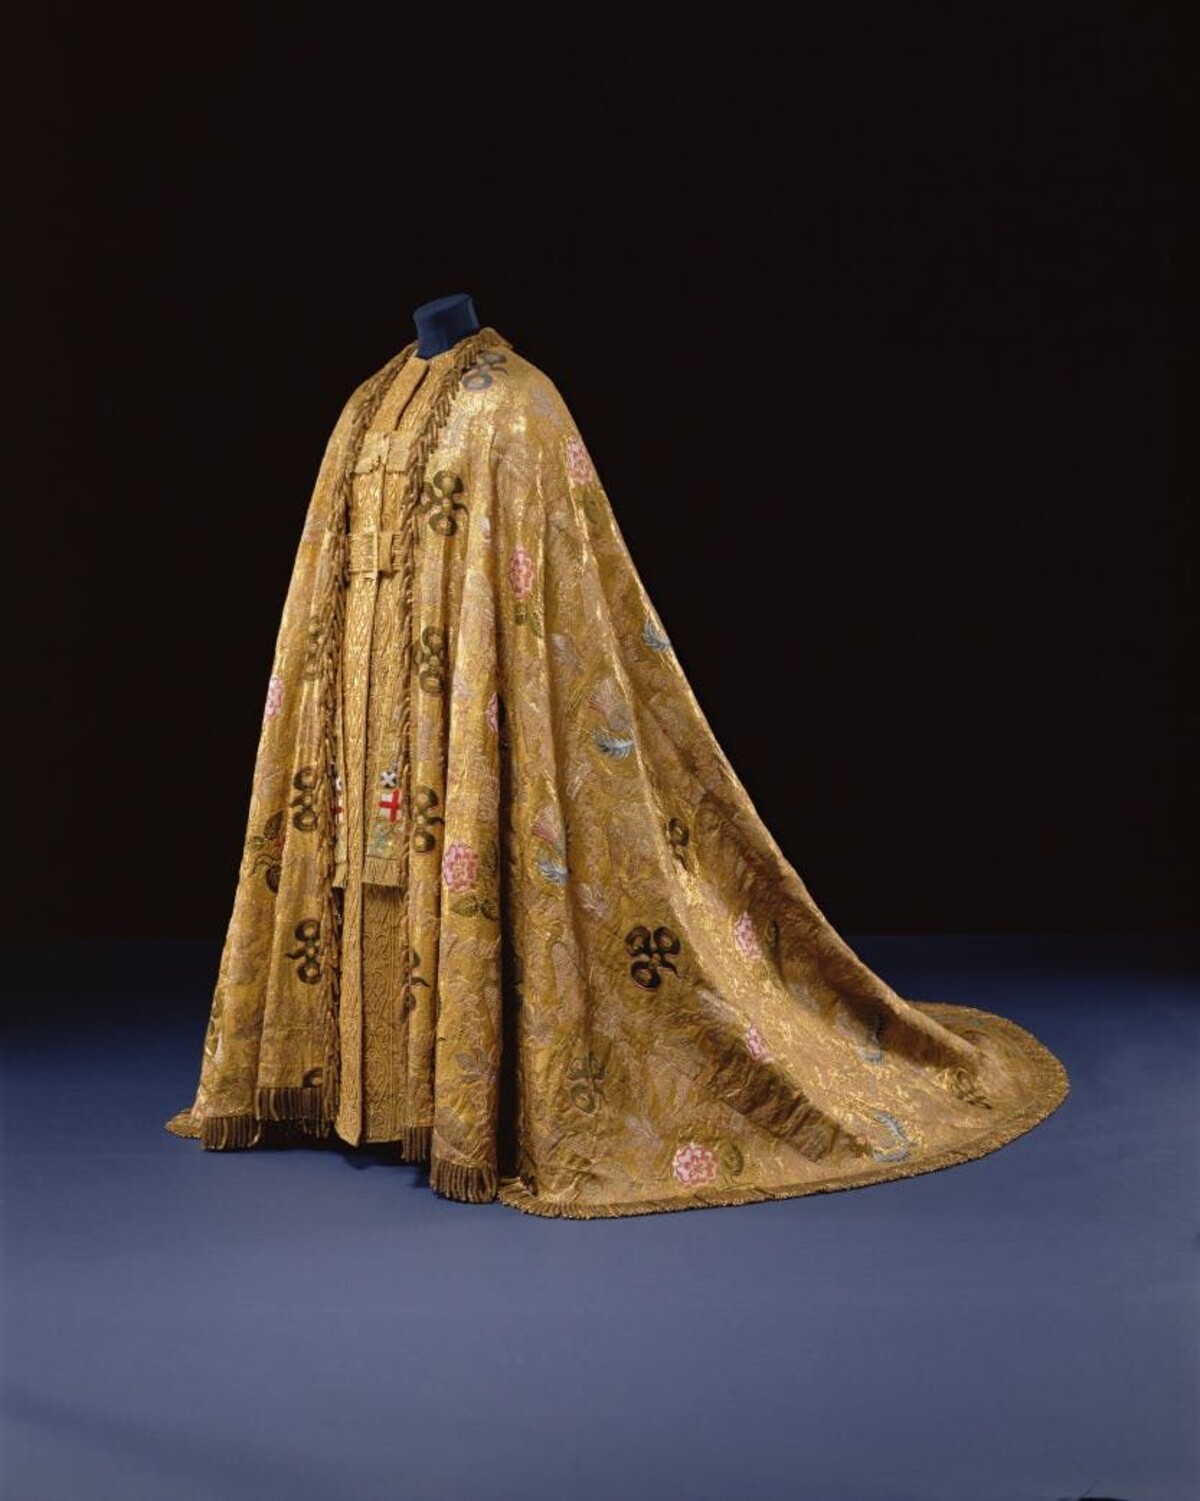 Plášť vyrobený pro korunovaci britského krále Jiřího IV. v roce 1821.